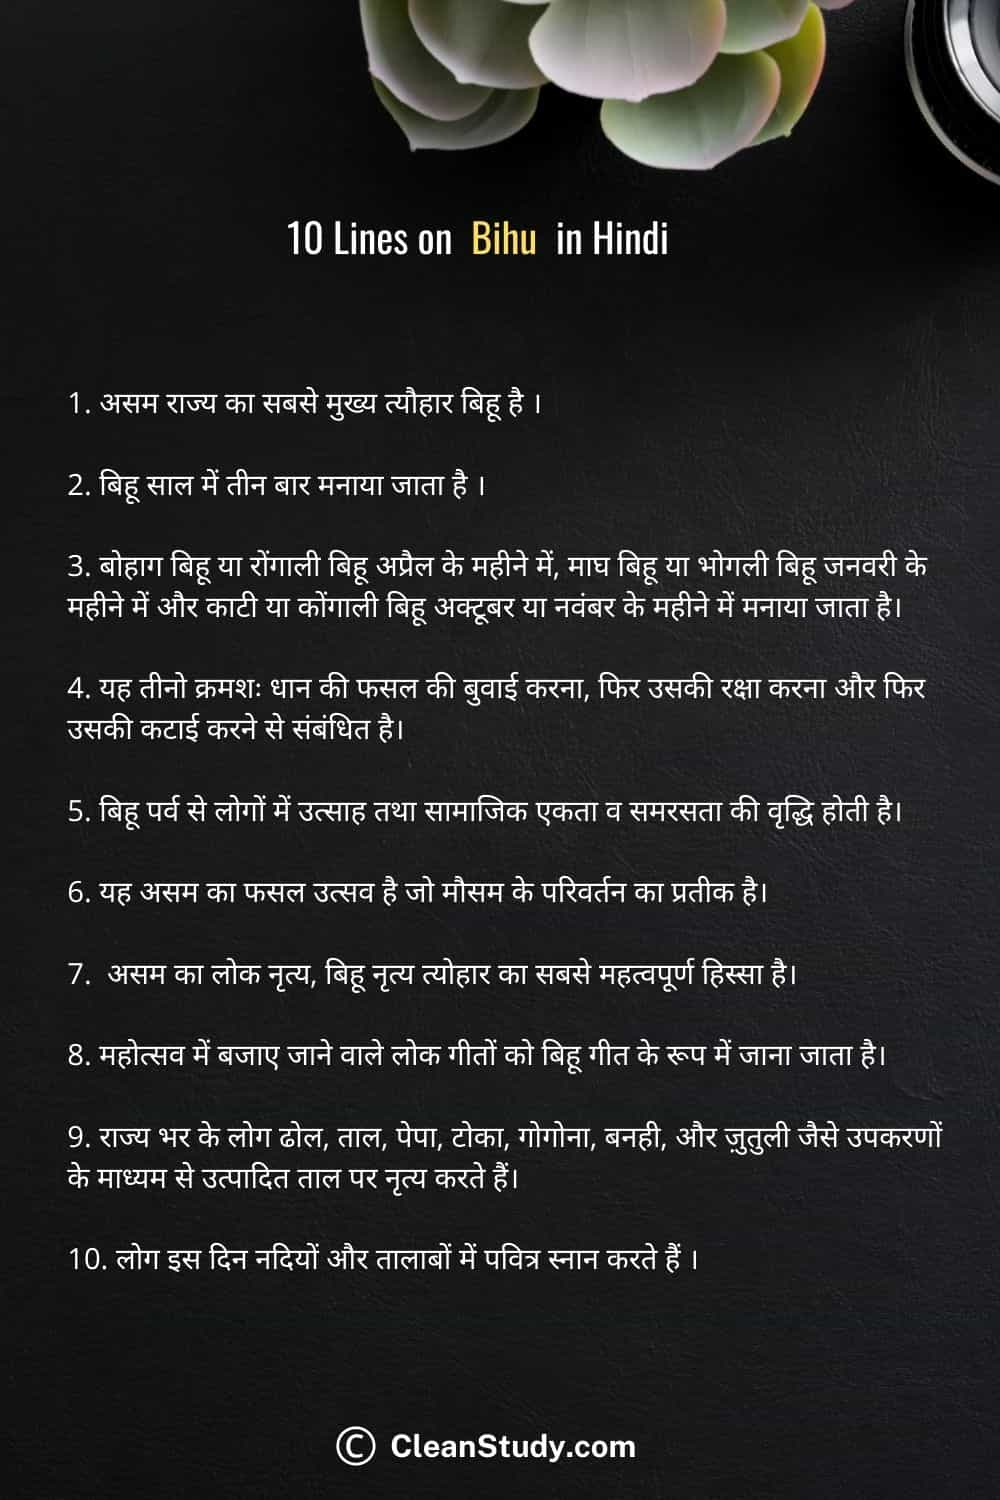 10 Lines on Bihu in Hindi